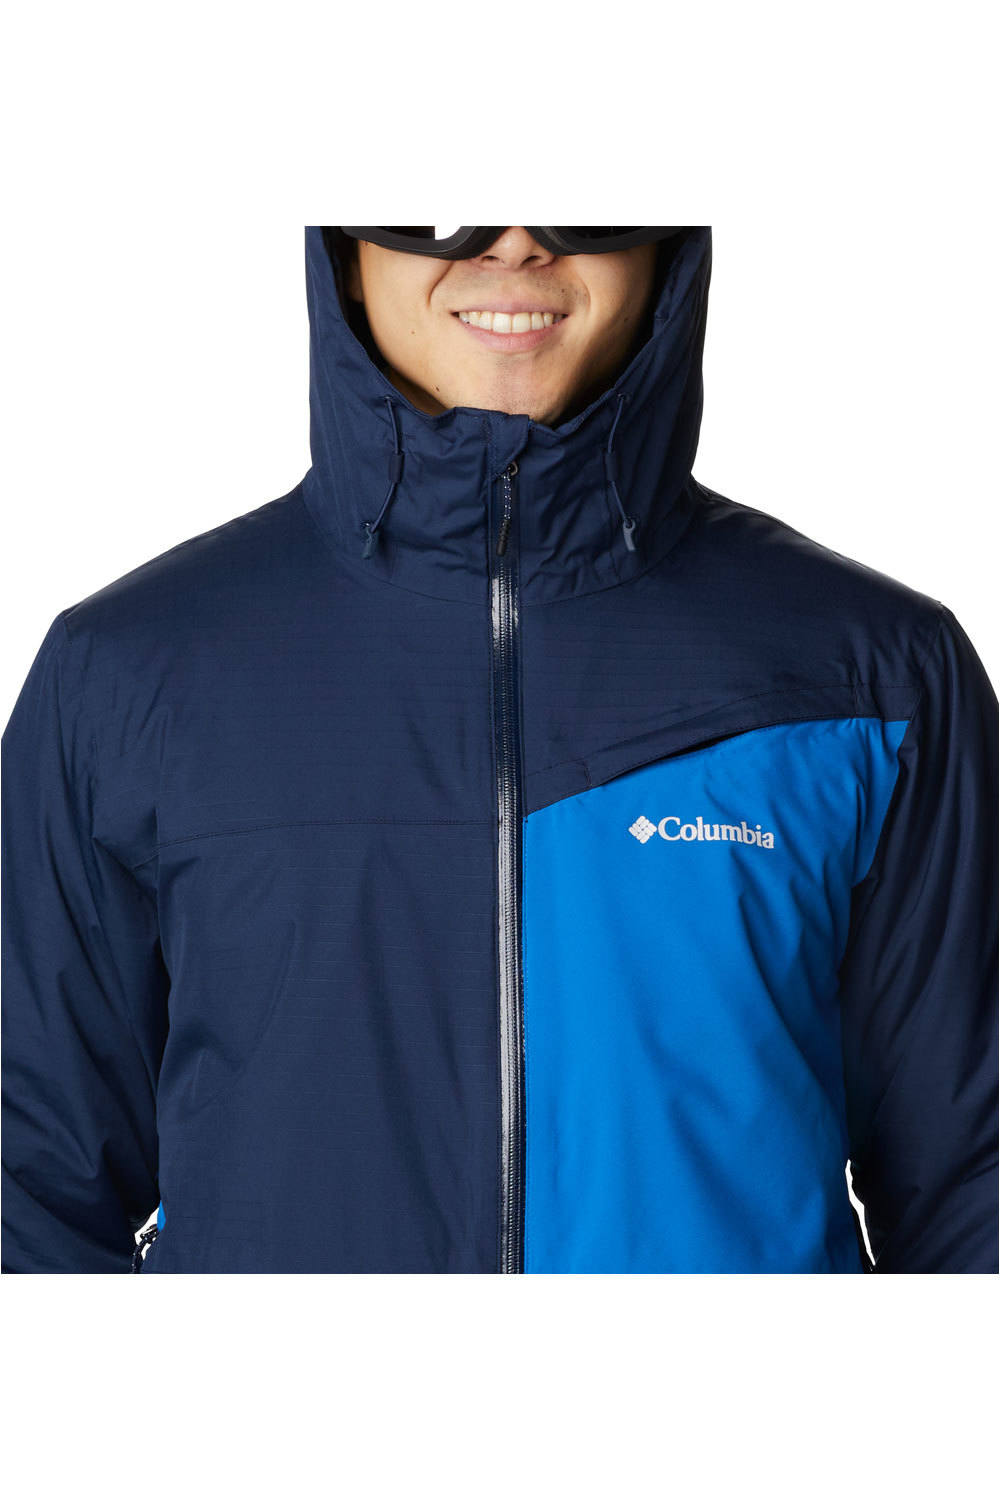 Columbia chaqueta esquí hombre ICEBERG POINT BRIGHT INDIGO vista detalle